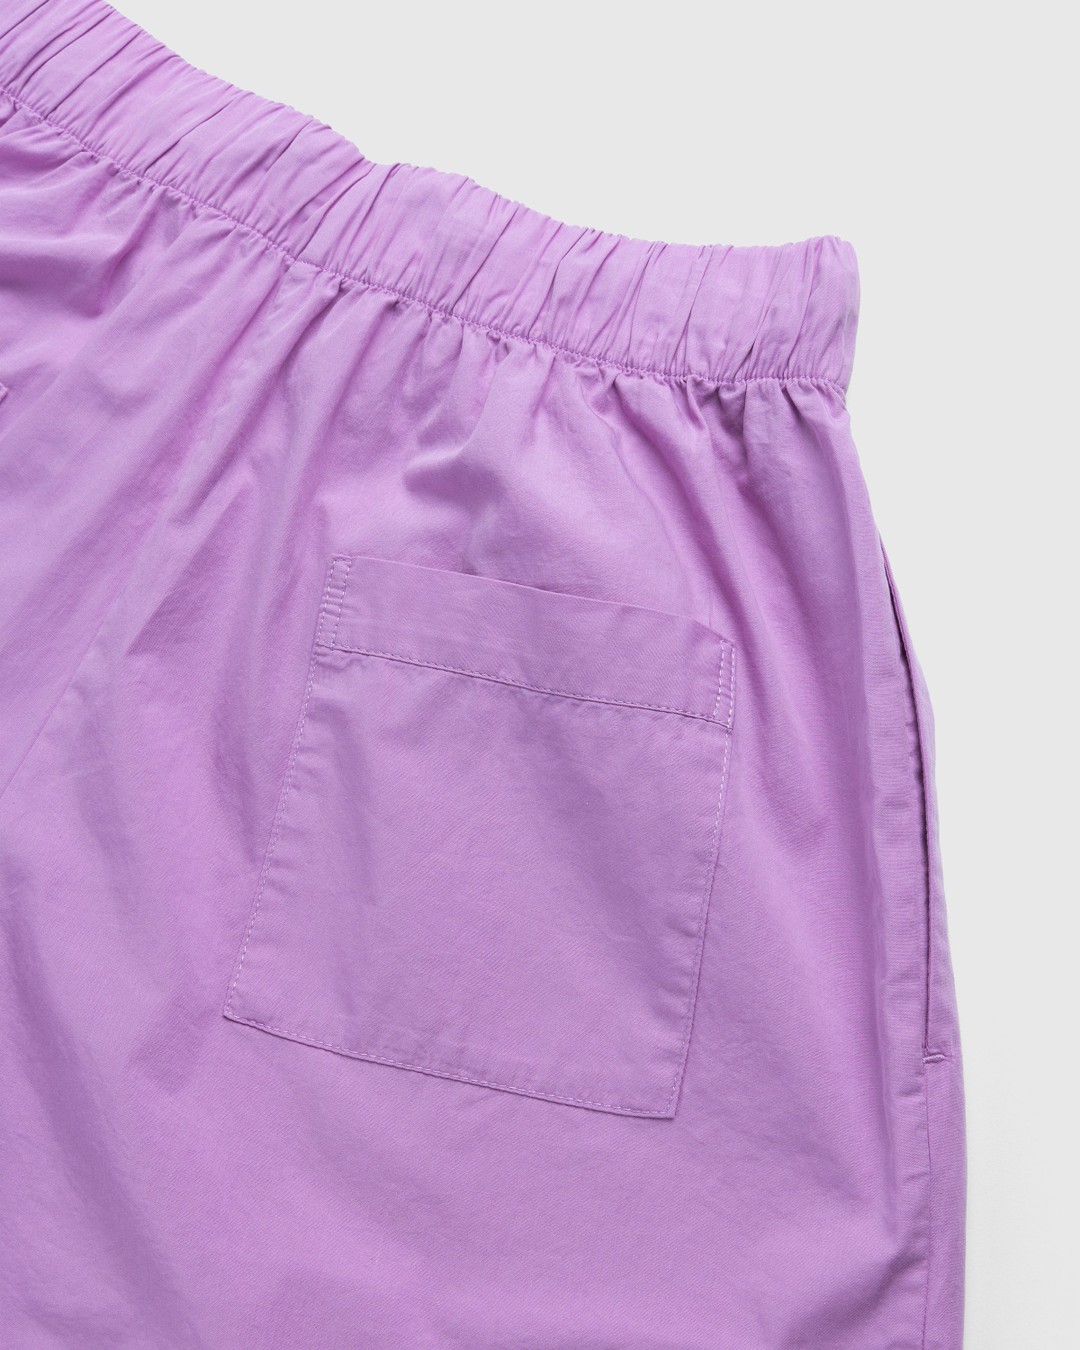 Tekla – Cotton Poplin Pyjamas Shorts Purple Pink - Pyjamas - Pink - Image 5